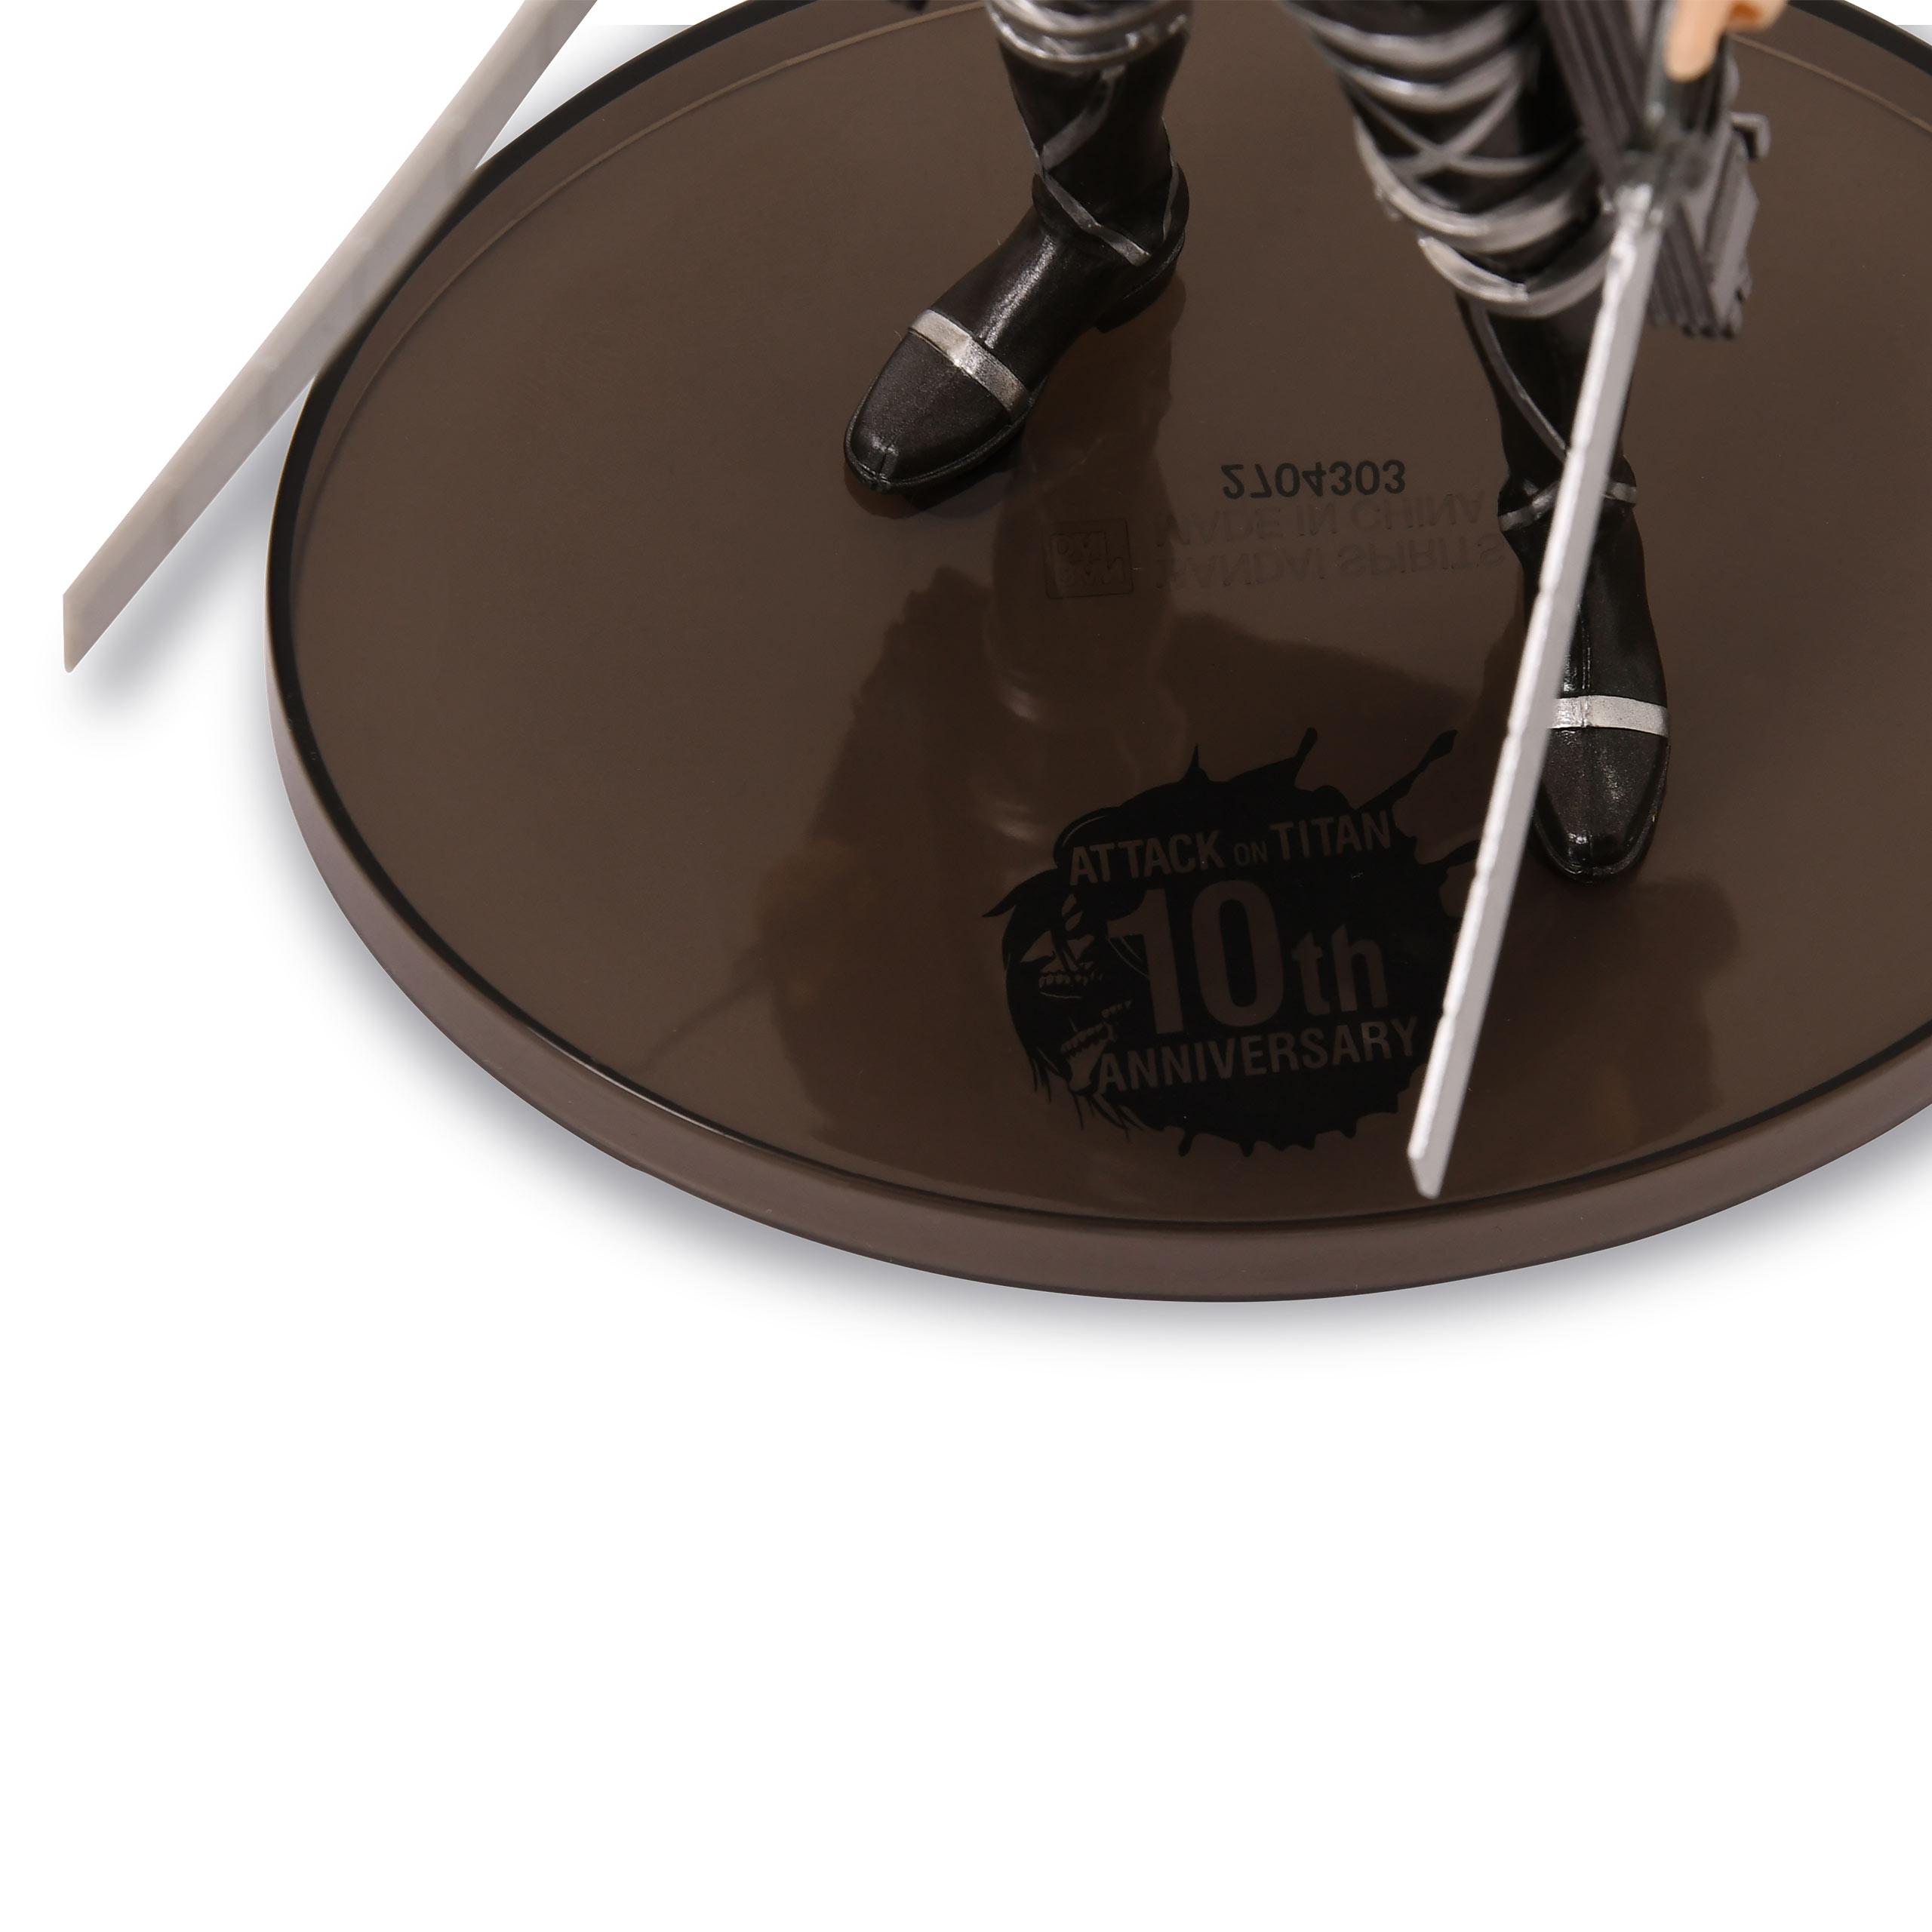 Attack on Titan - The Final Season - Levi Figur Special 10th Anniversary